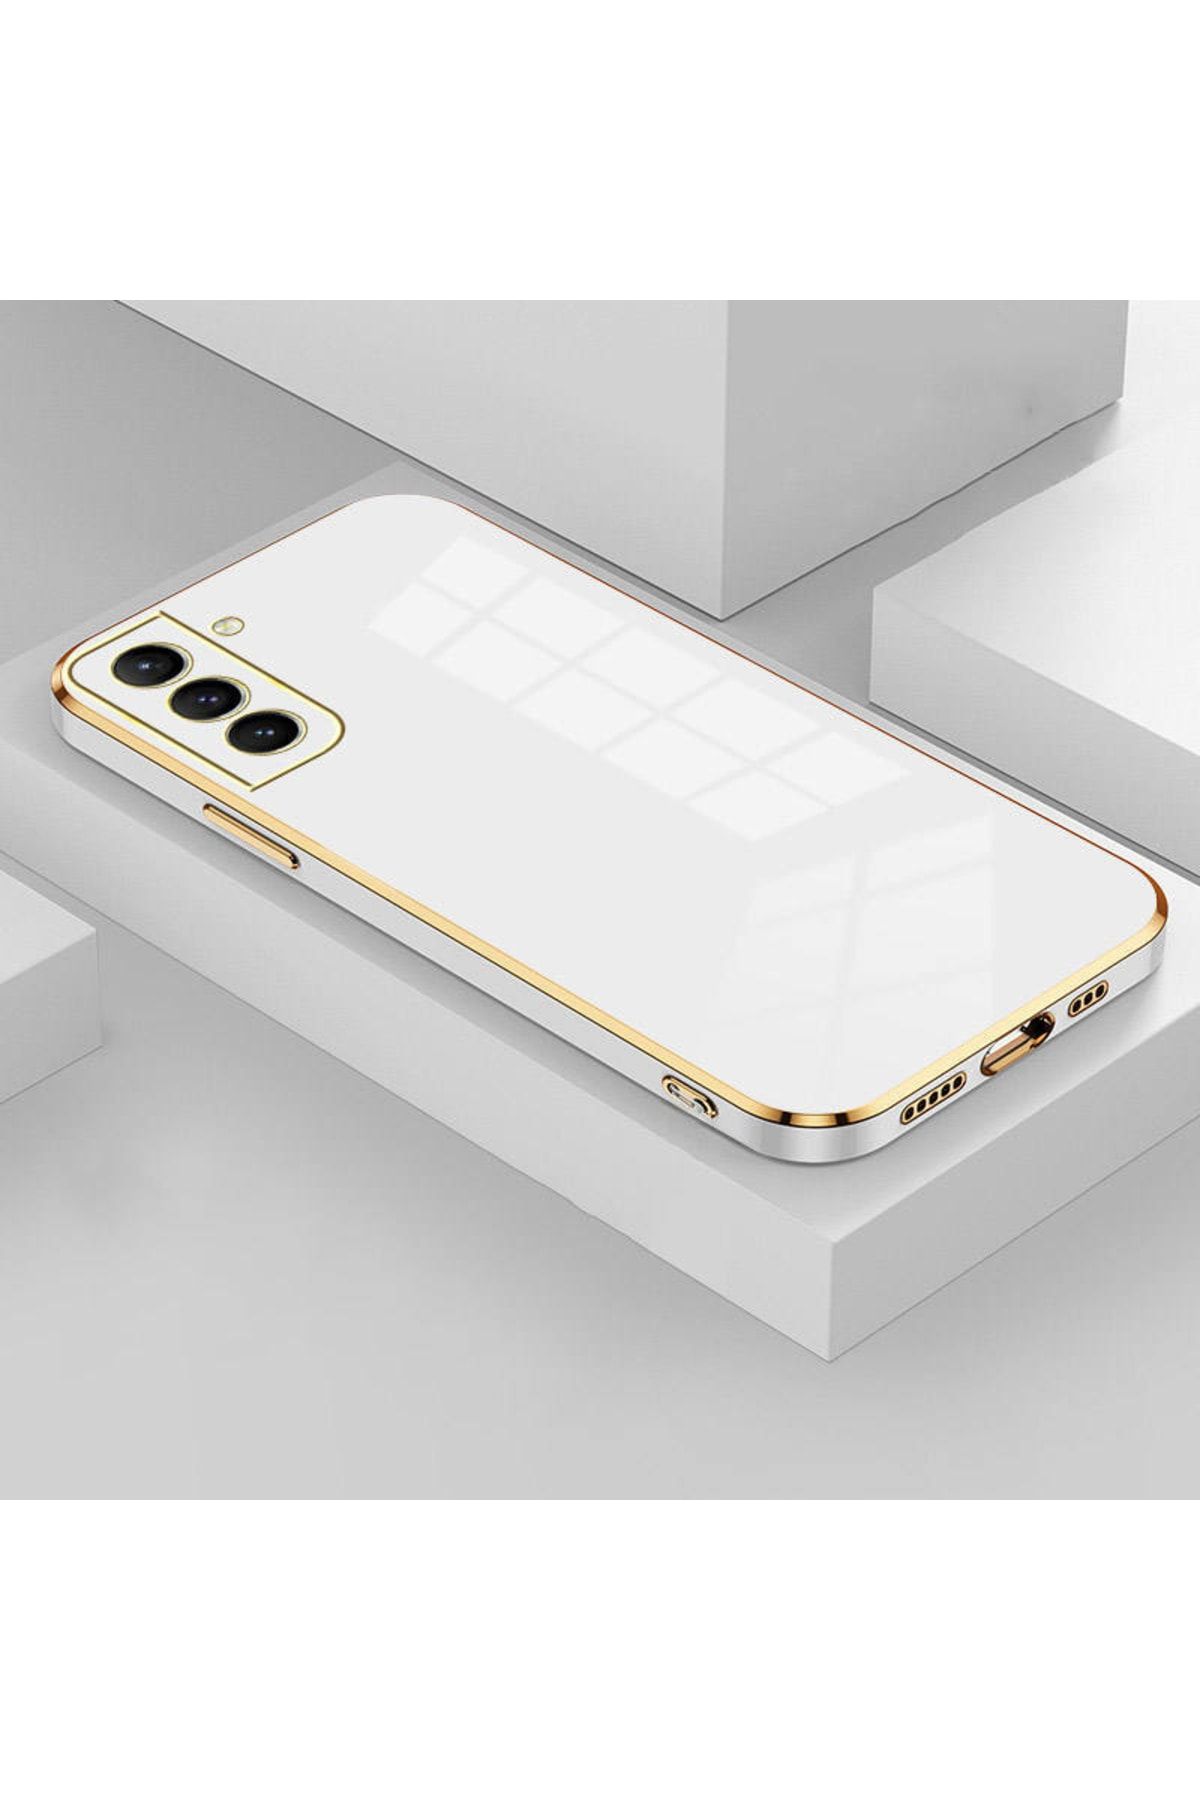 Rivor Samsung Galaxy S20 Fe Uyumlu Kılıf Parlak Kenarlı Altın Işlemeli Kamera Korumalı Kılıf